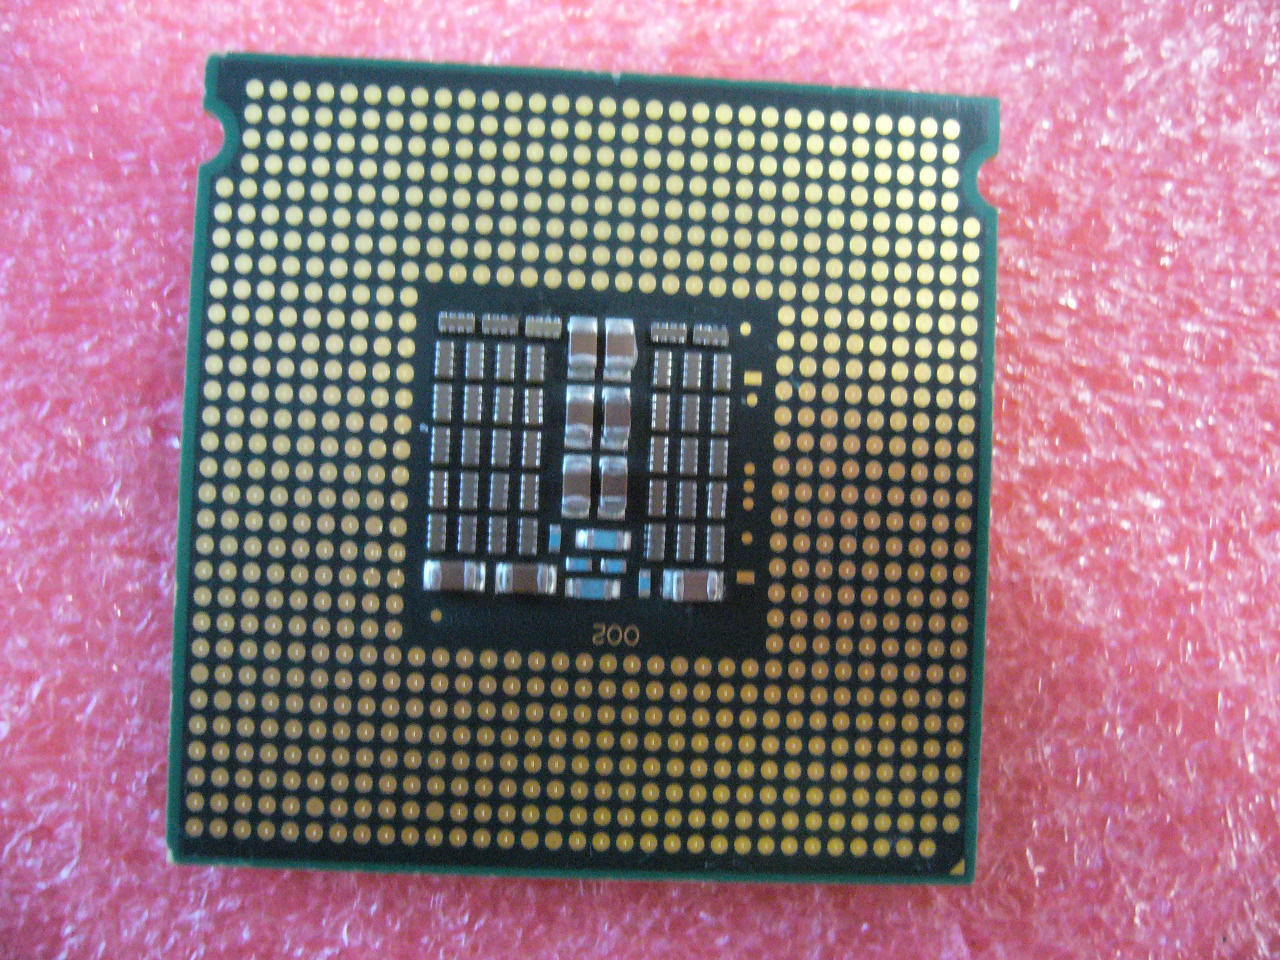 QTY 1x Intel Xeon CPU Quad Core X3323 2.50Ghz/6MB/1333Mhz LGA771 SLASE SLBC5 - Click Image to Close